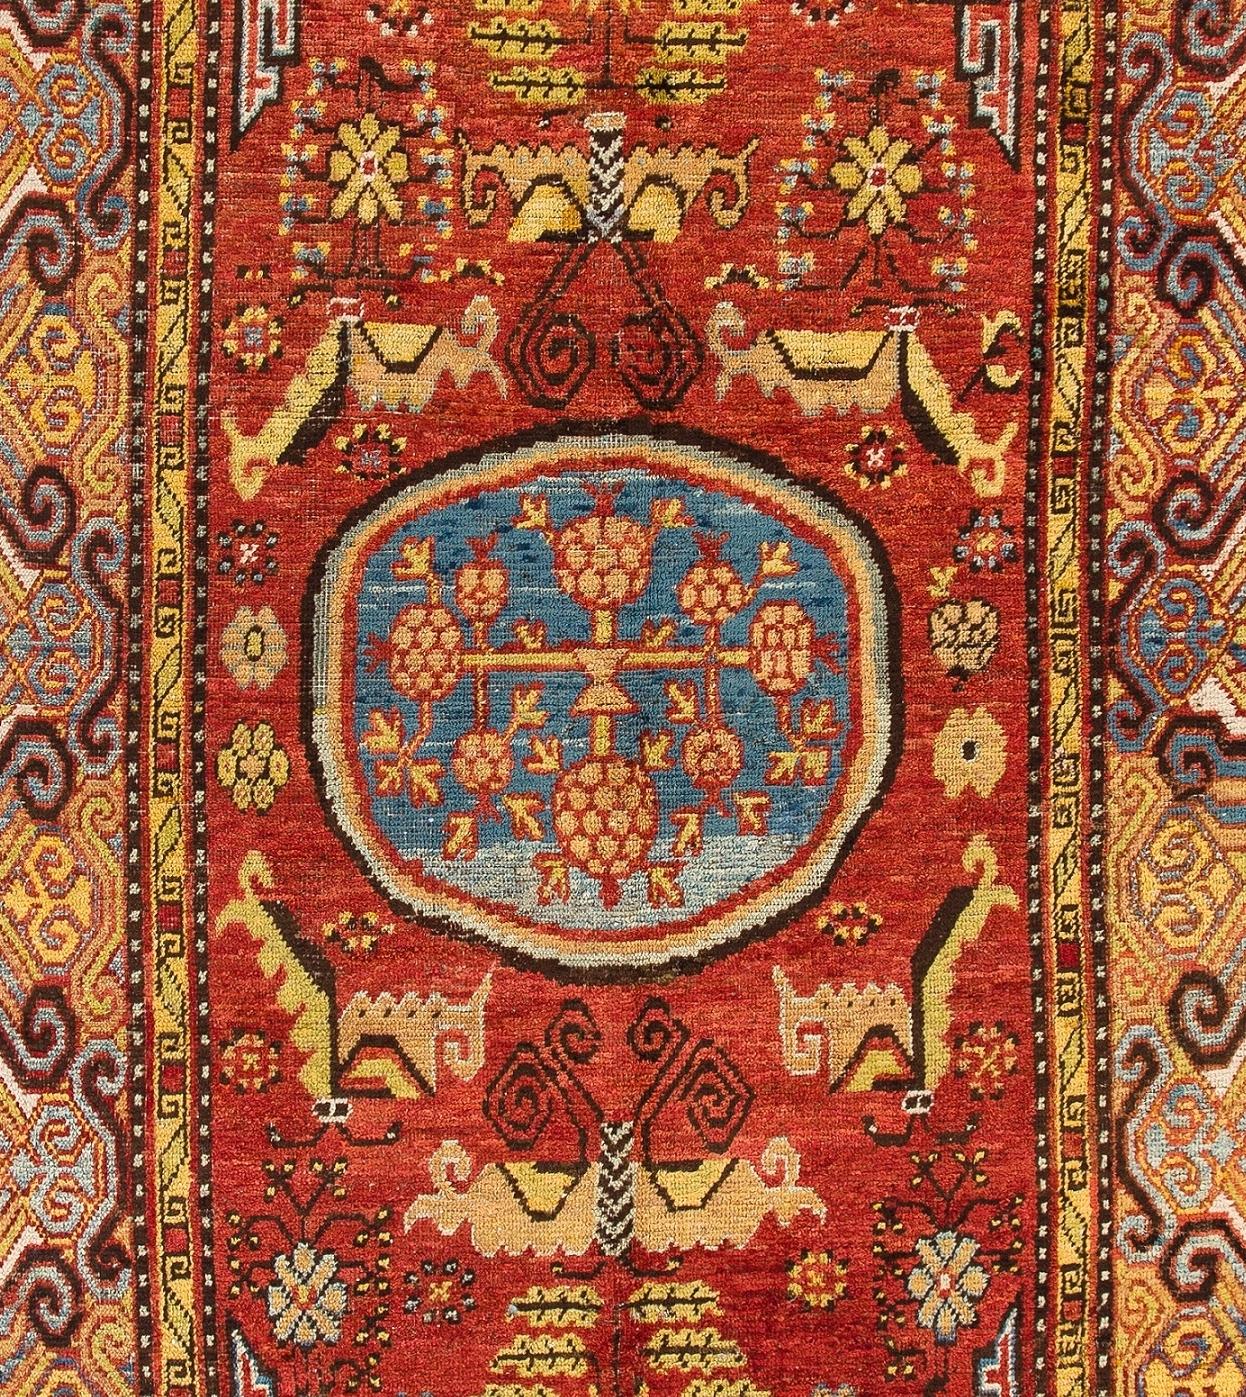 Ein hervorragender antiker Khotan-Teppich aus Ostturkestan/Westchina. Dies ist eines der besten und ältesten Beispiele für gewebte Kunstwerke aus diesem alten Webereizentrum. Gut erhaltener Zustand. 
Größe: 5,6 x 10,3 ft.